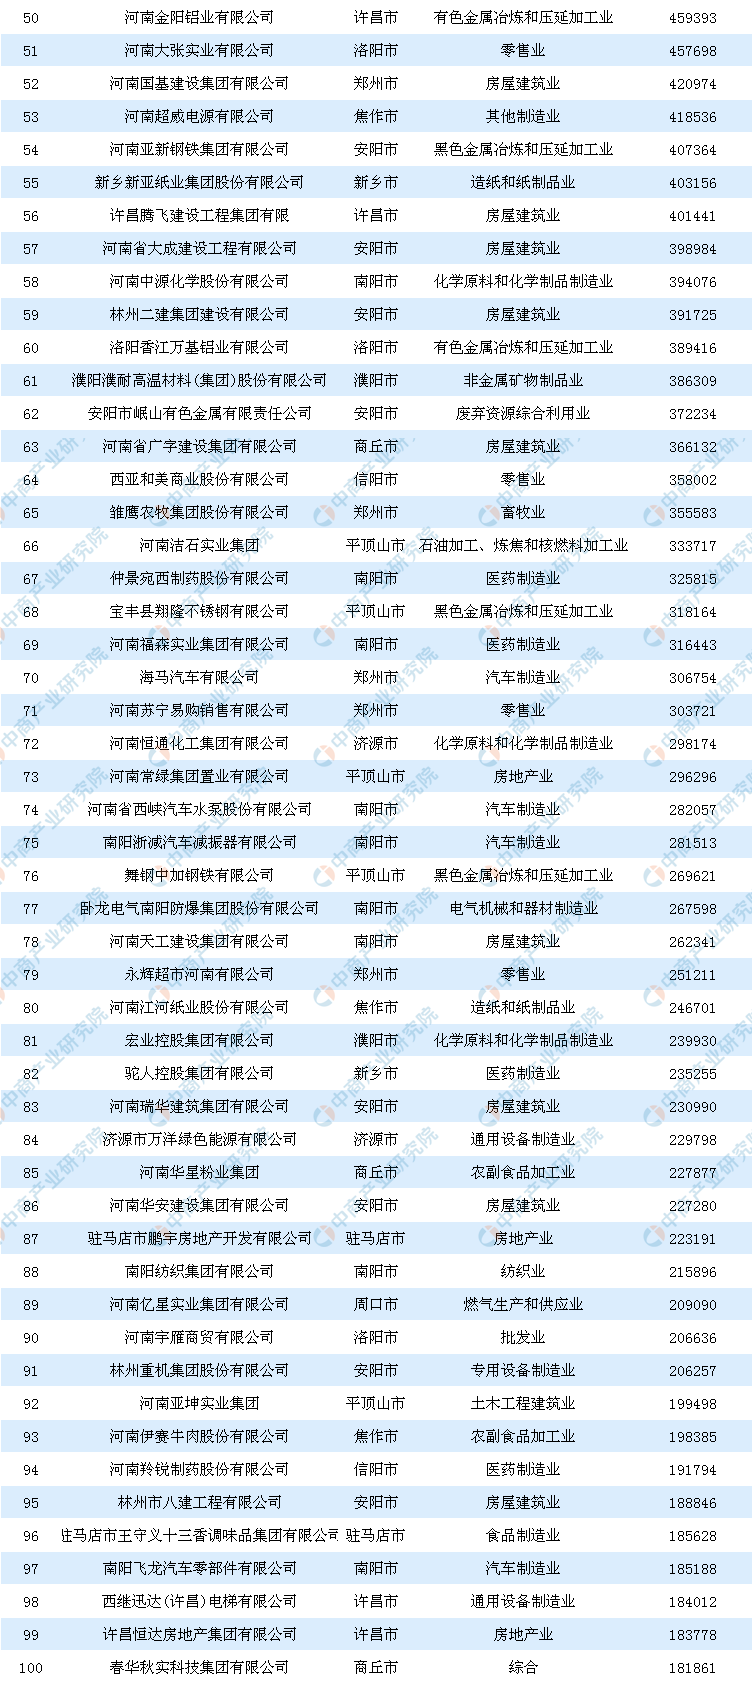 2019年民营企业排行_2019年广西民营企业100强排行榜